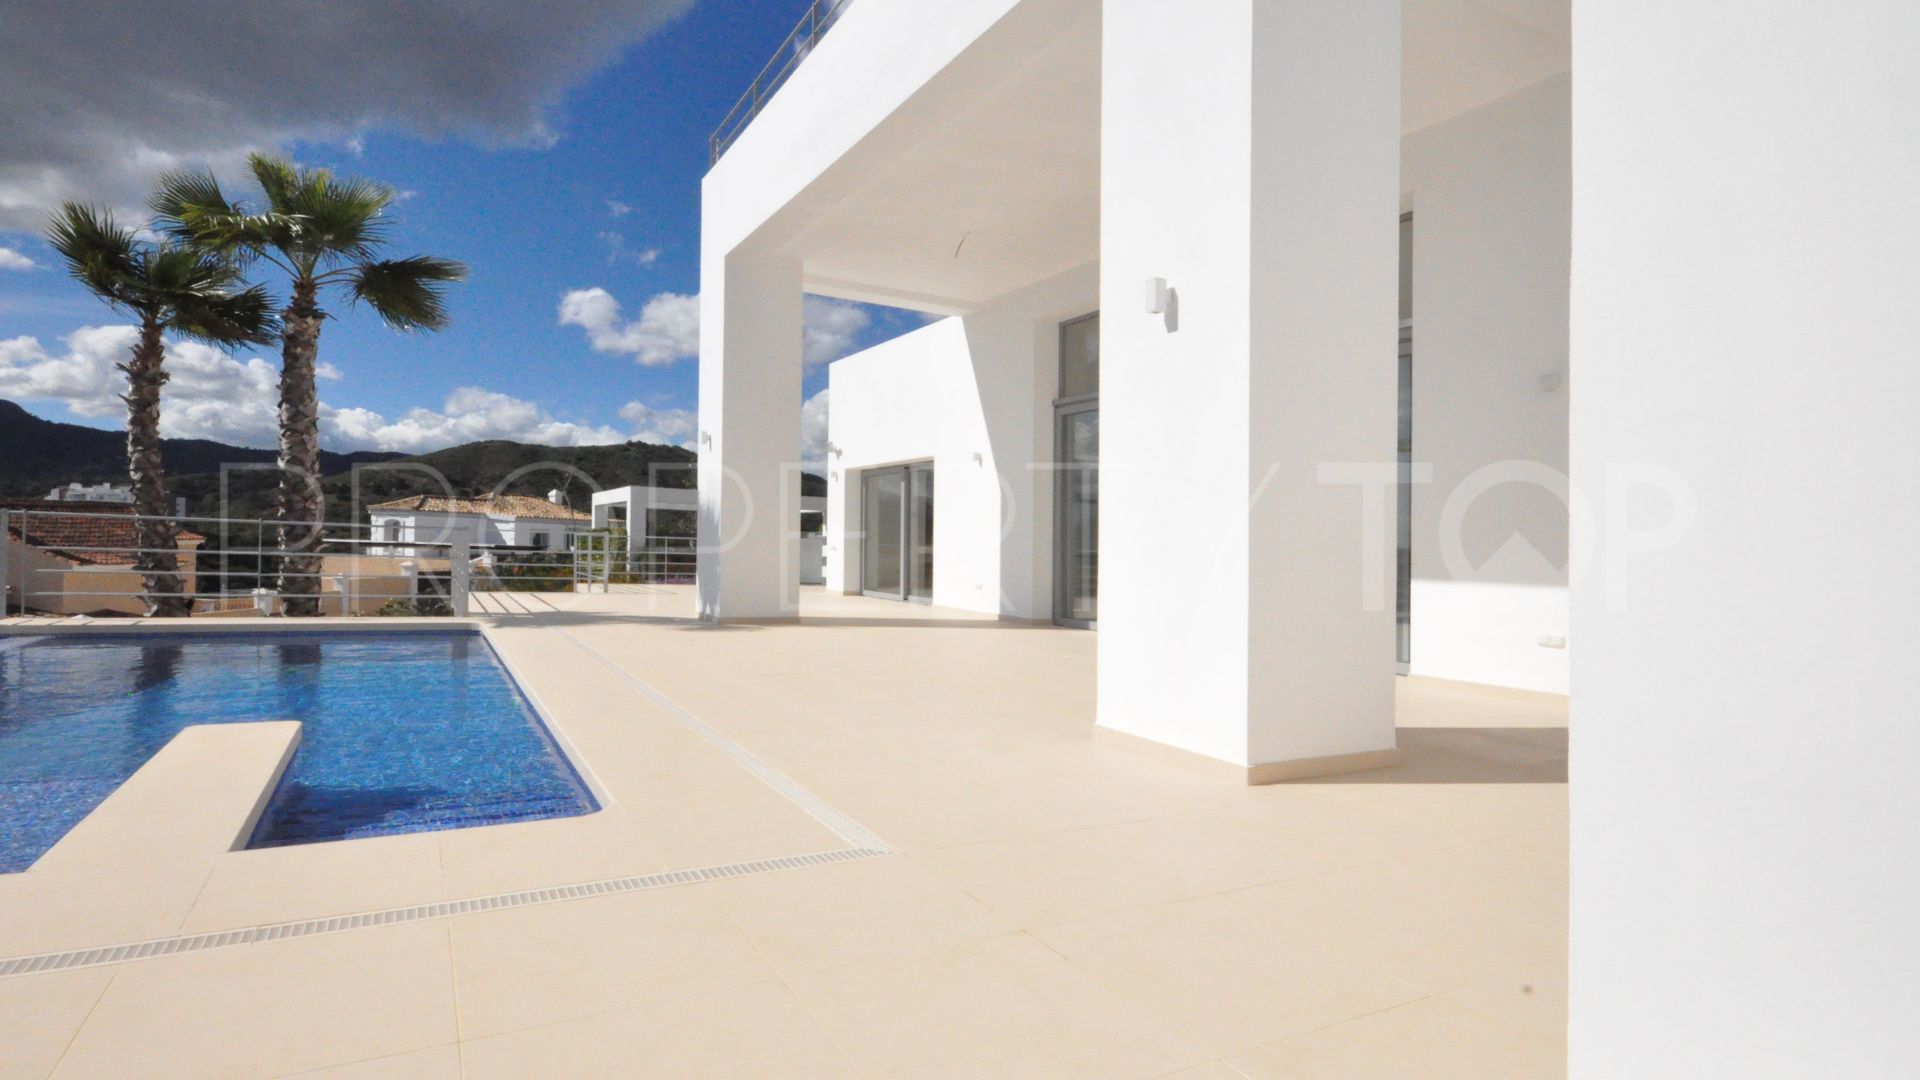 For sale Puerto del Capitan villa with 4 bedrooms